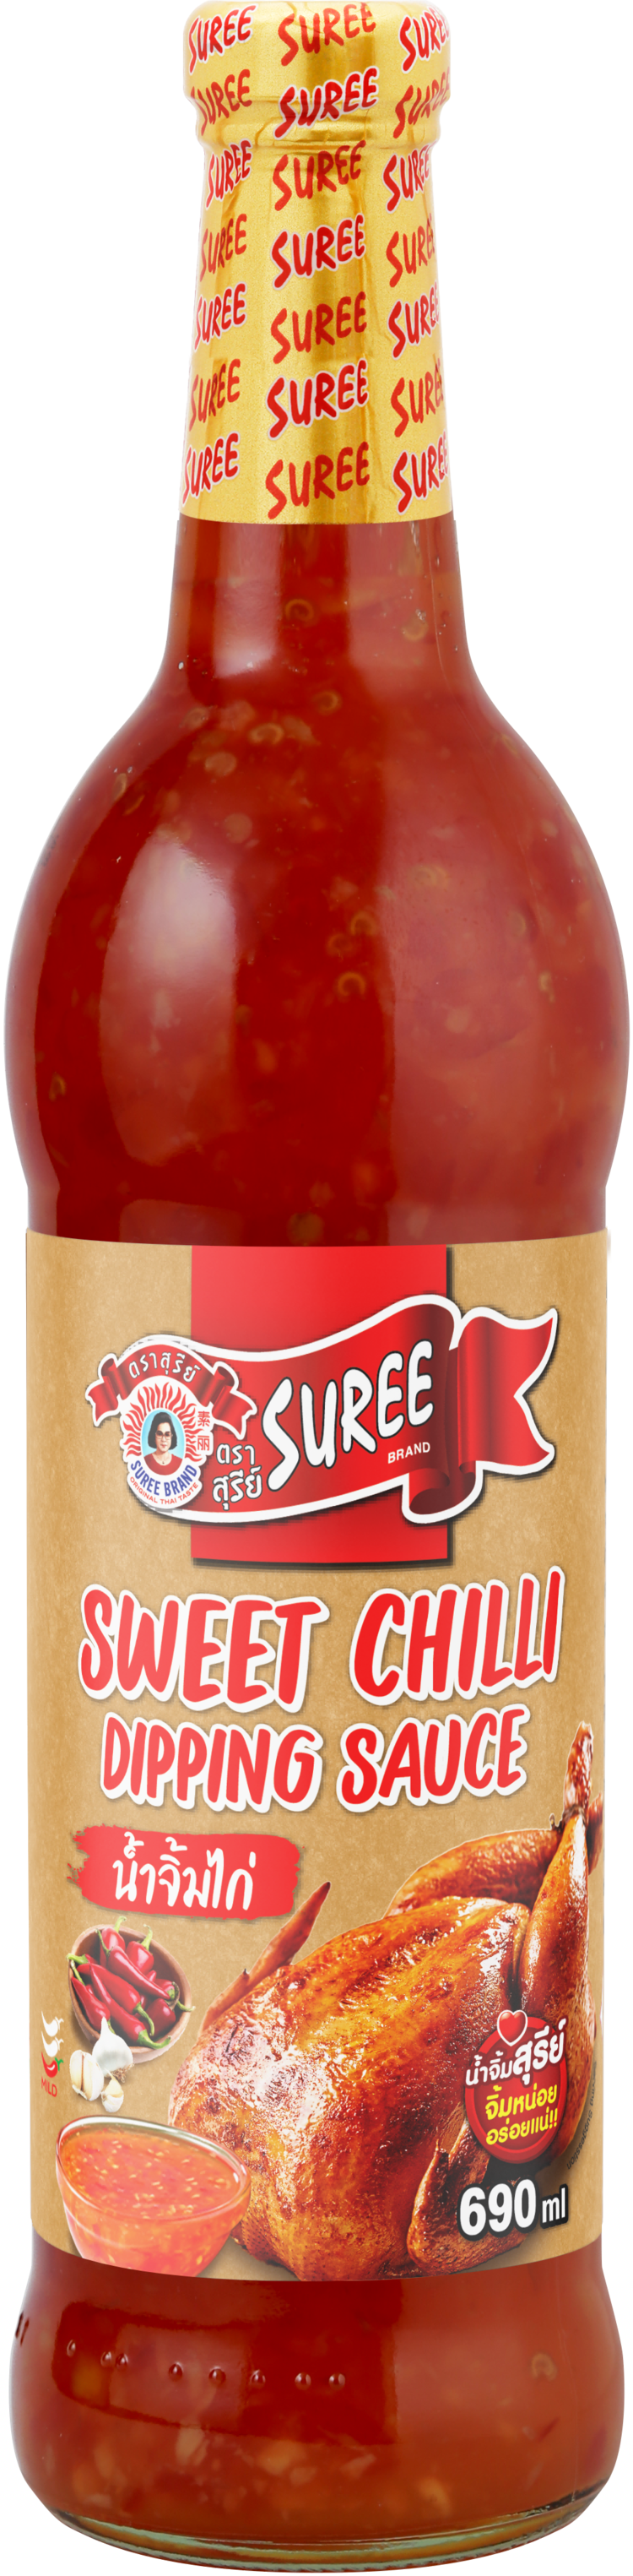 Suree Sweet chili sauce